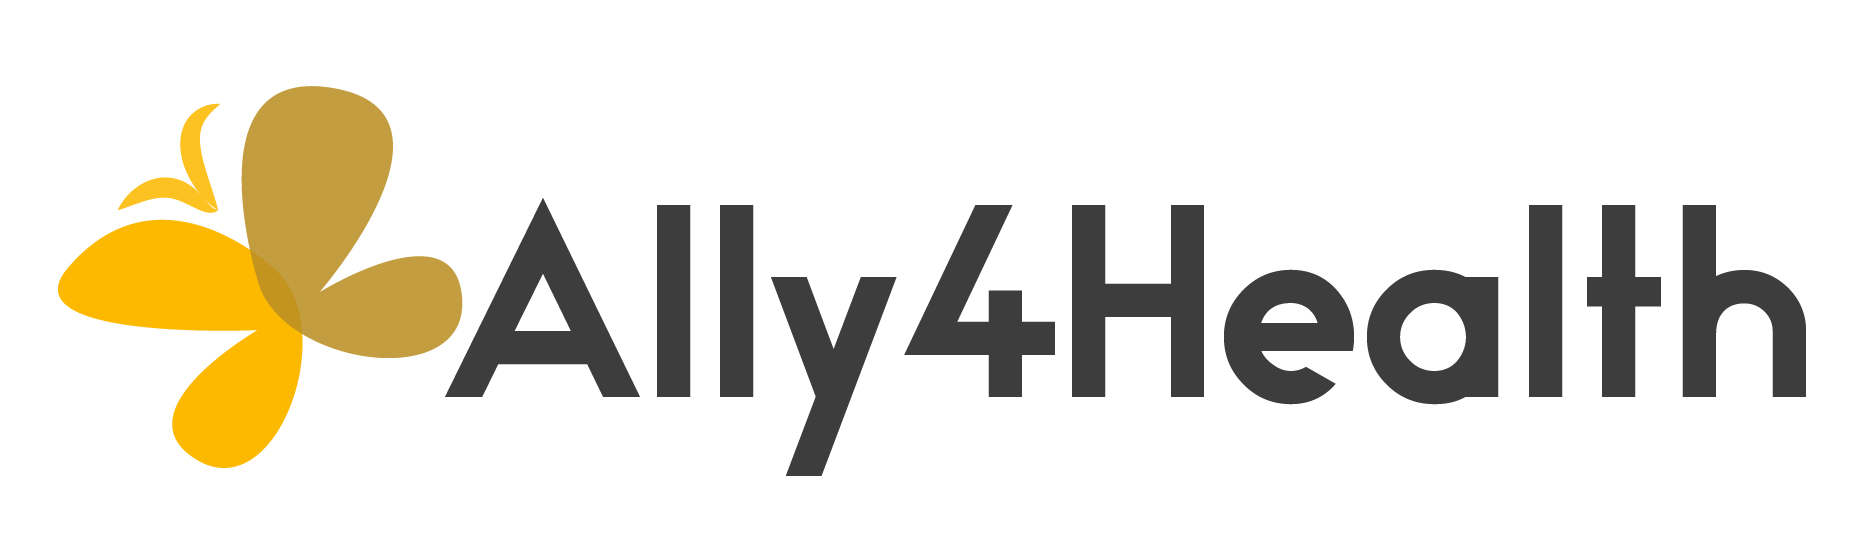 Ally4Health